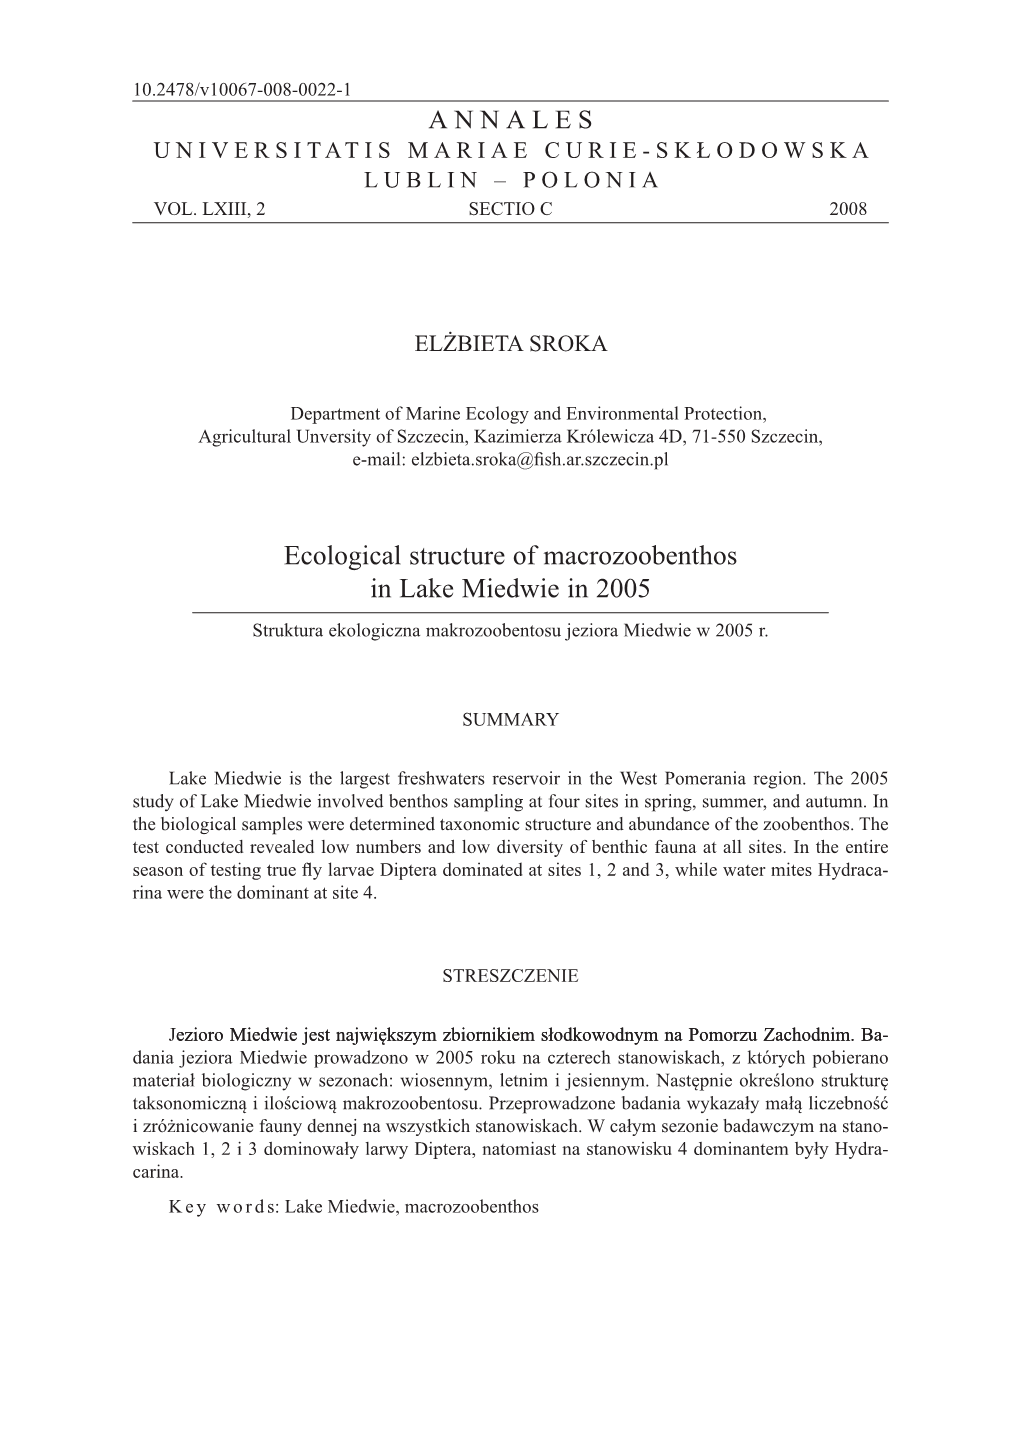 Ecological Structure of Macrozoobenthos in Lake Miedwie in 2005 Struktura Ekologiczna Makrozoobentosu Jeziora Miedwie W 2005 R